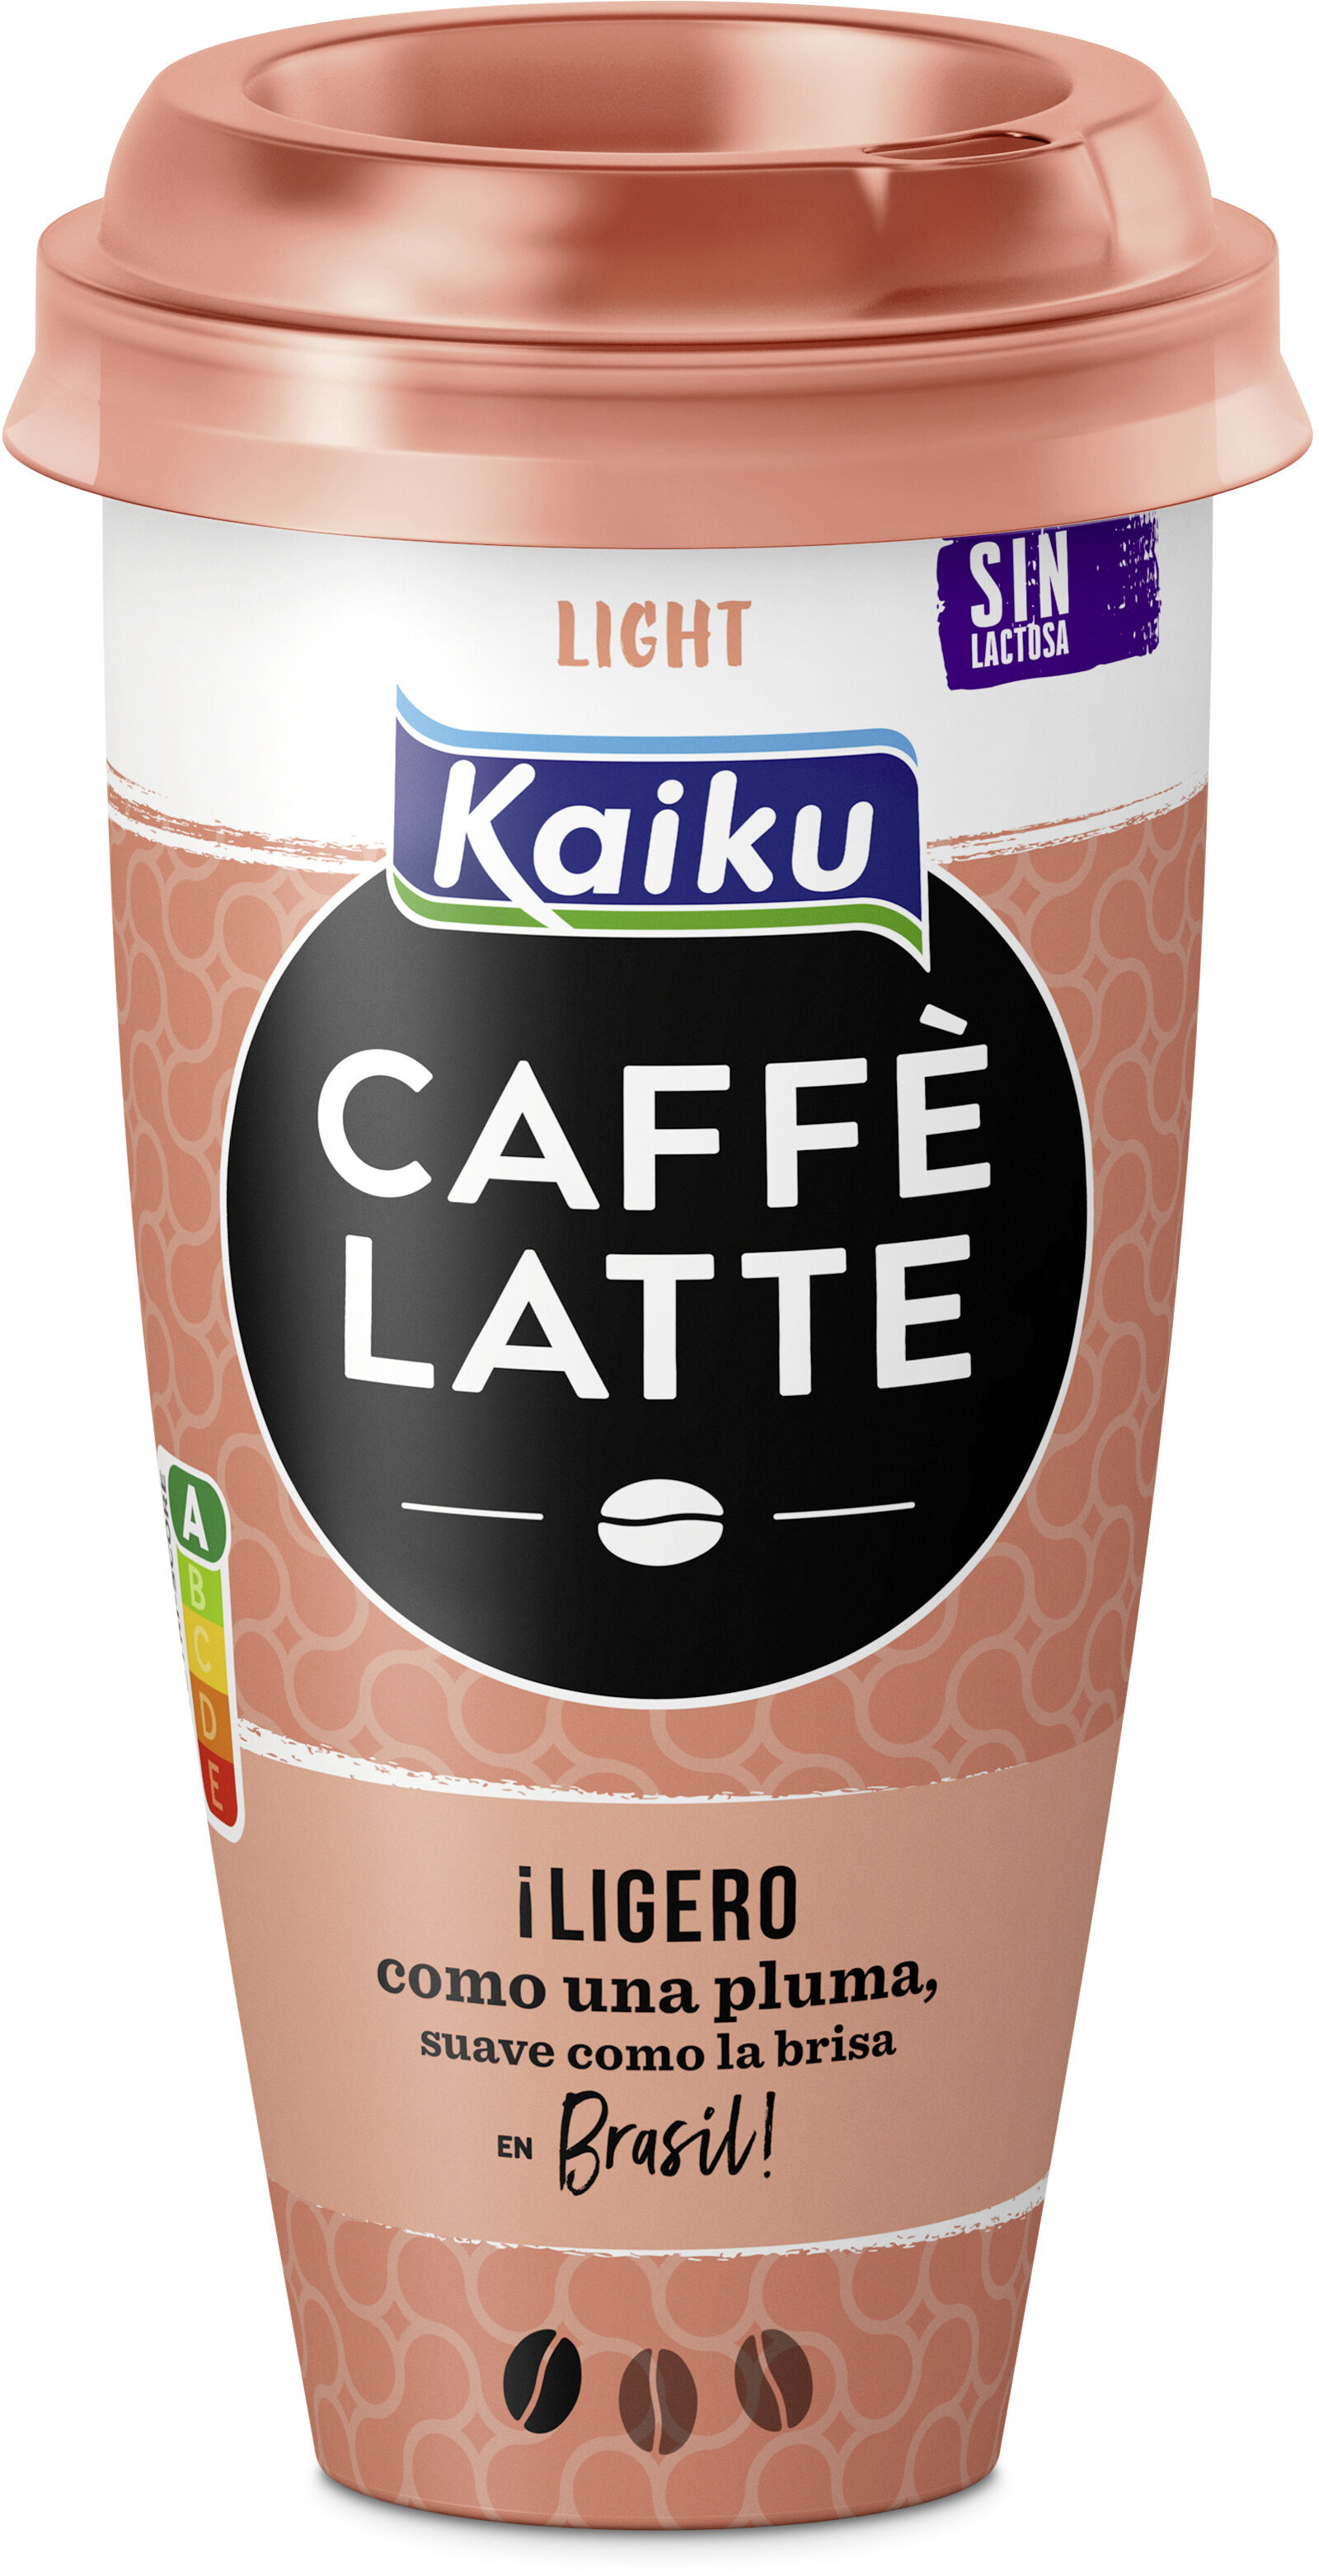 Caffé latte light café arábica suave con leche - Product